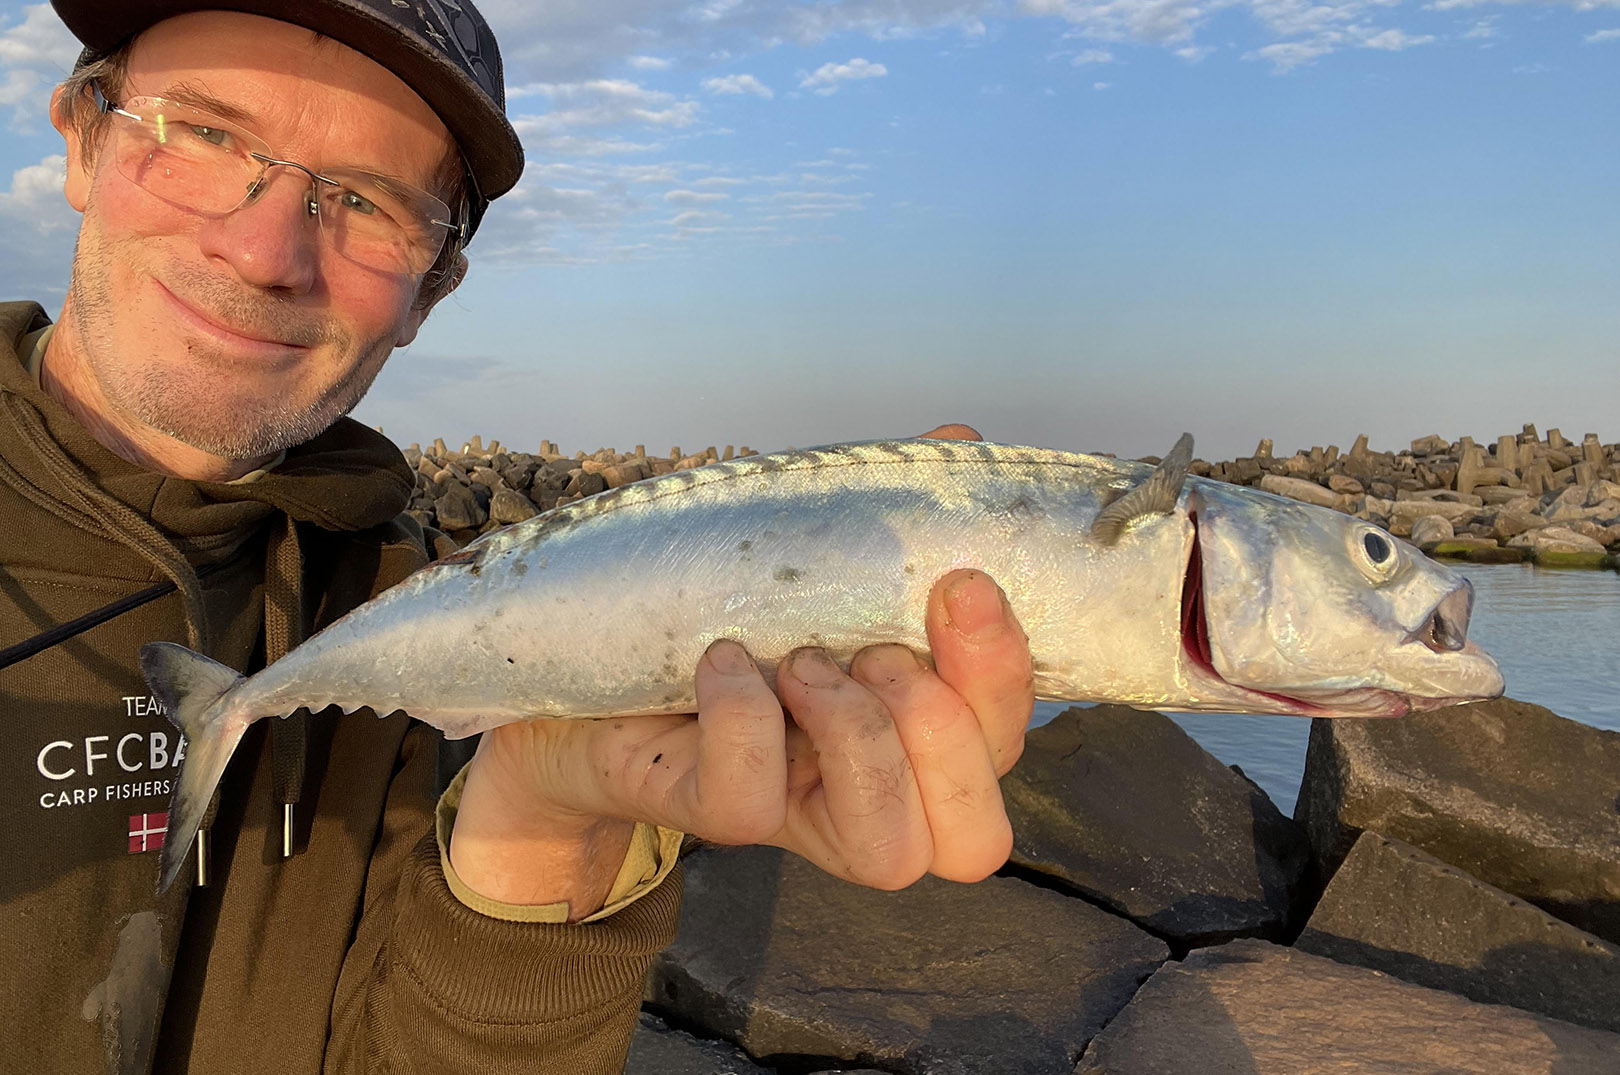 Tungstensblinkene virkerhelt eminent til makrel. Her en fin fisk til Jens ursell taget ved Thyborøn.